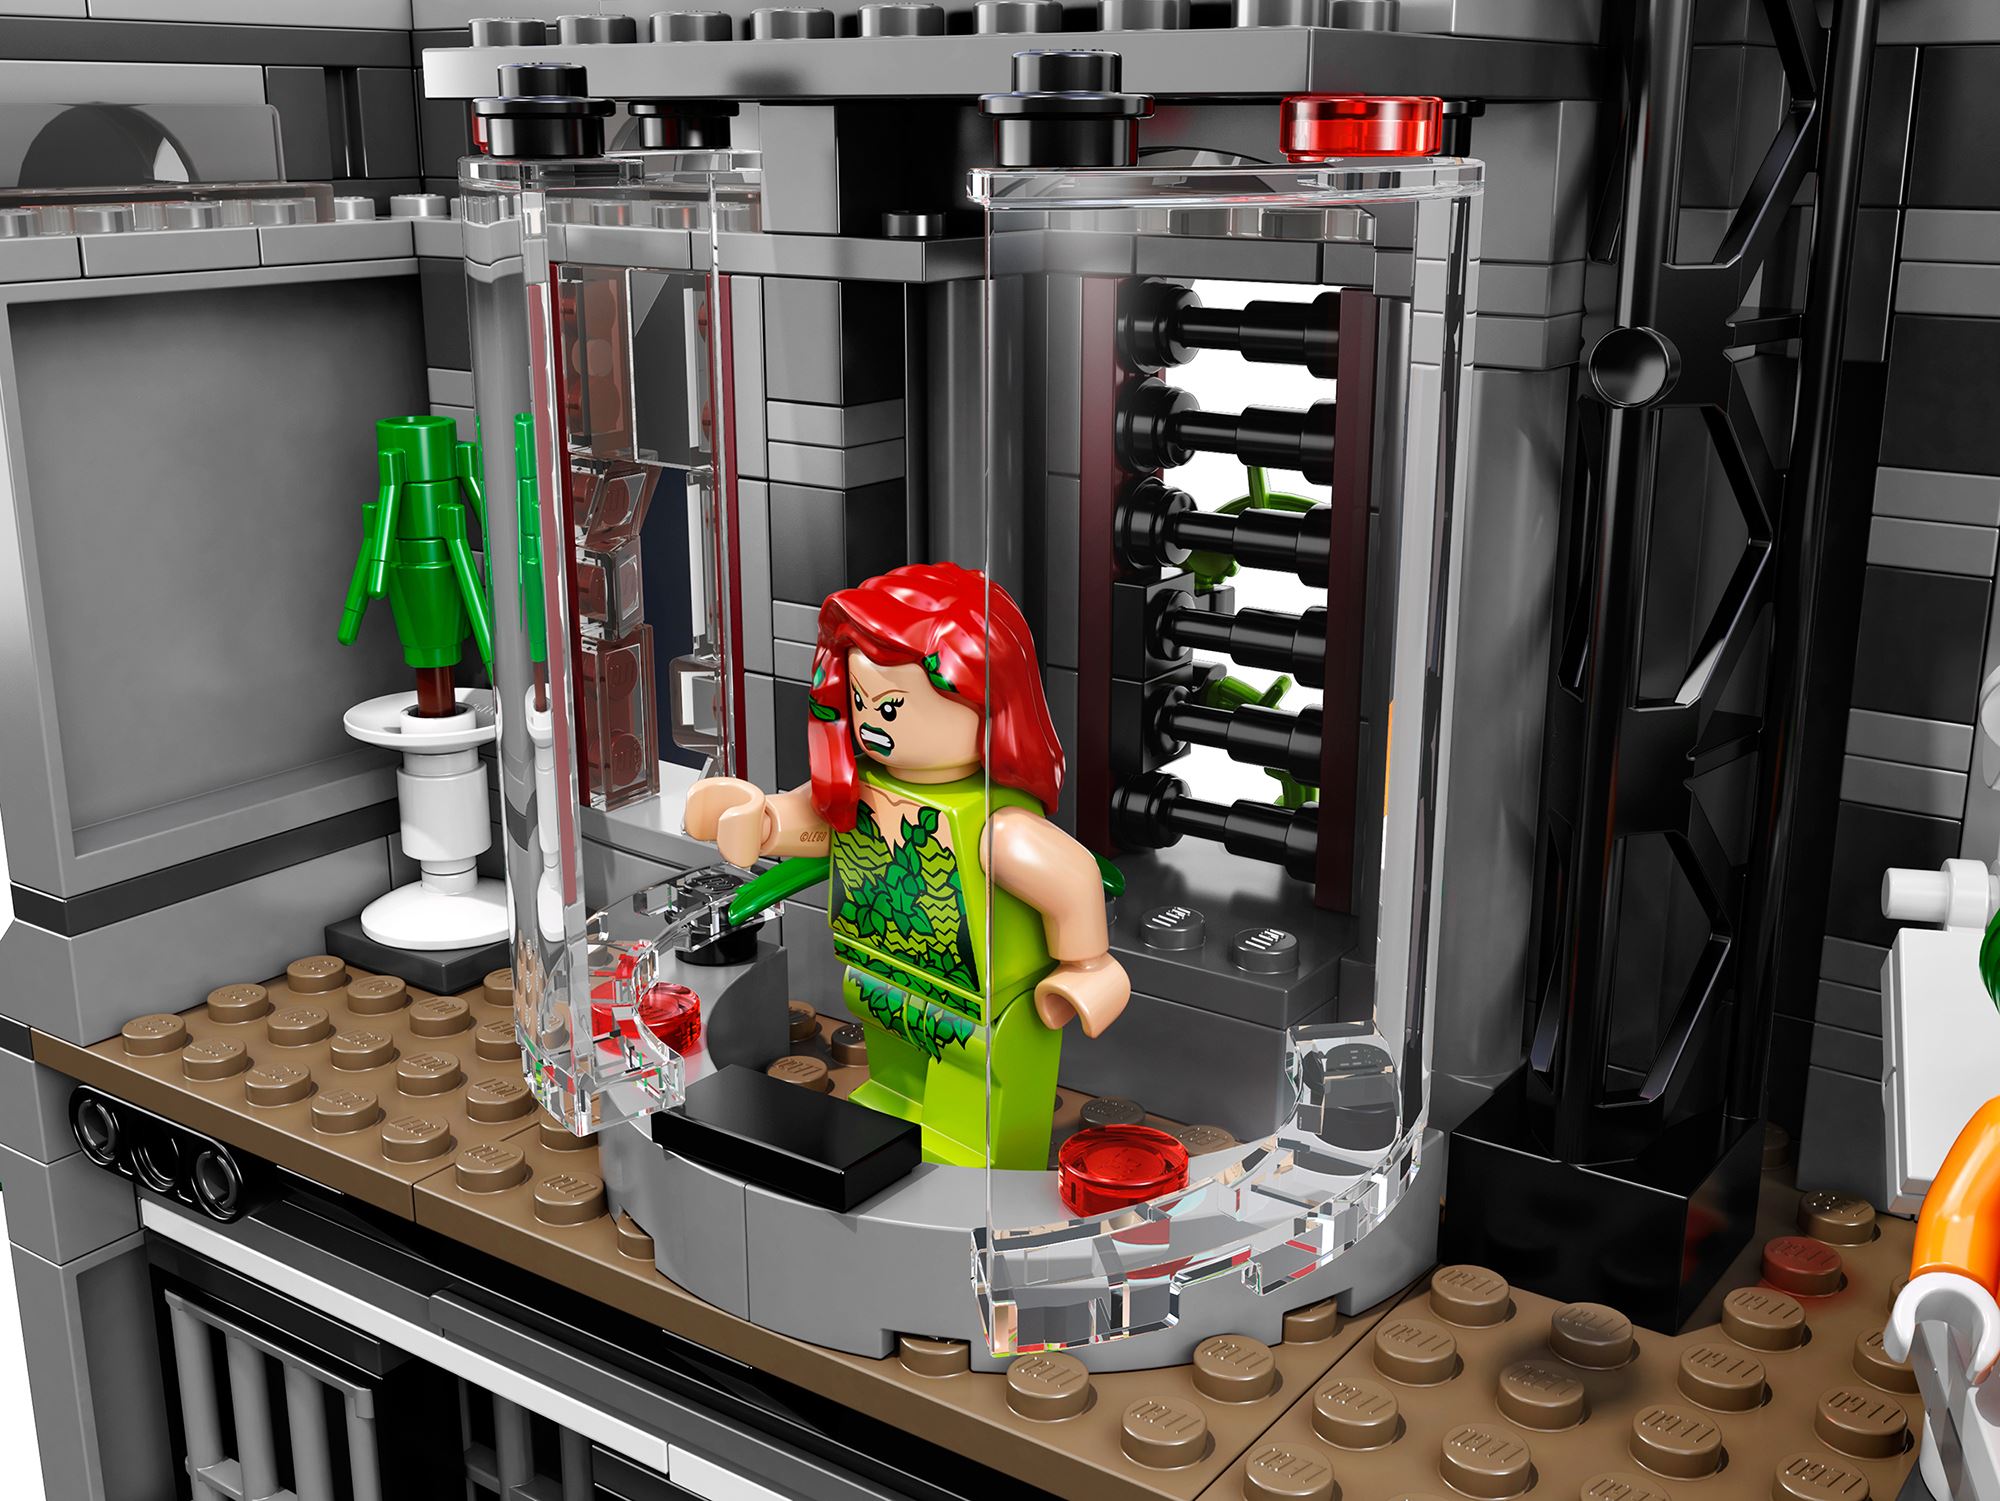 Lego Batman Sets 2013